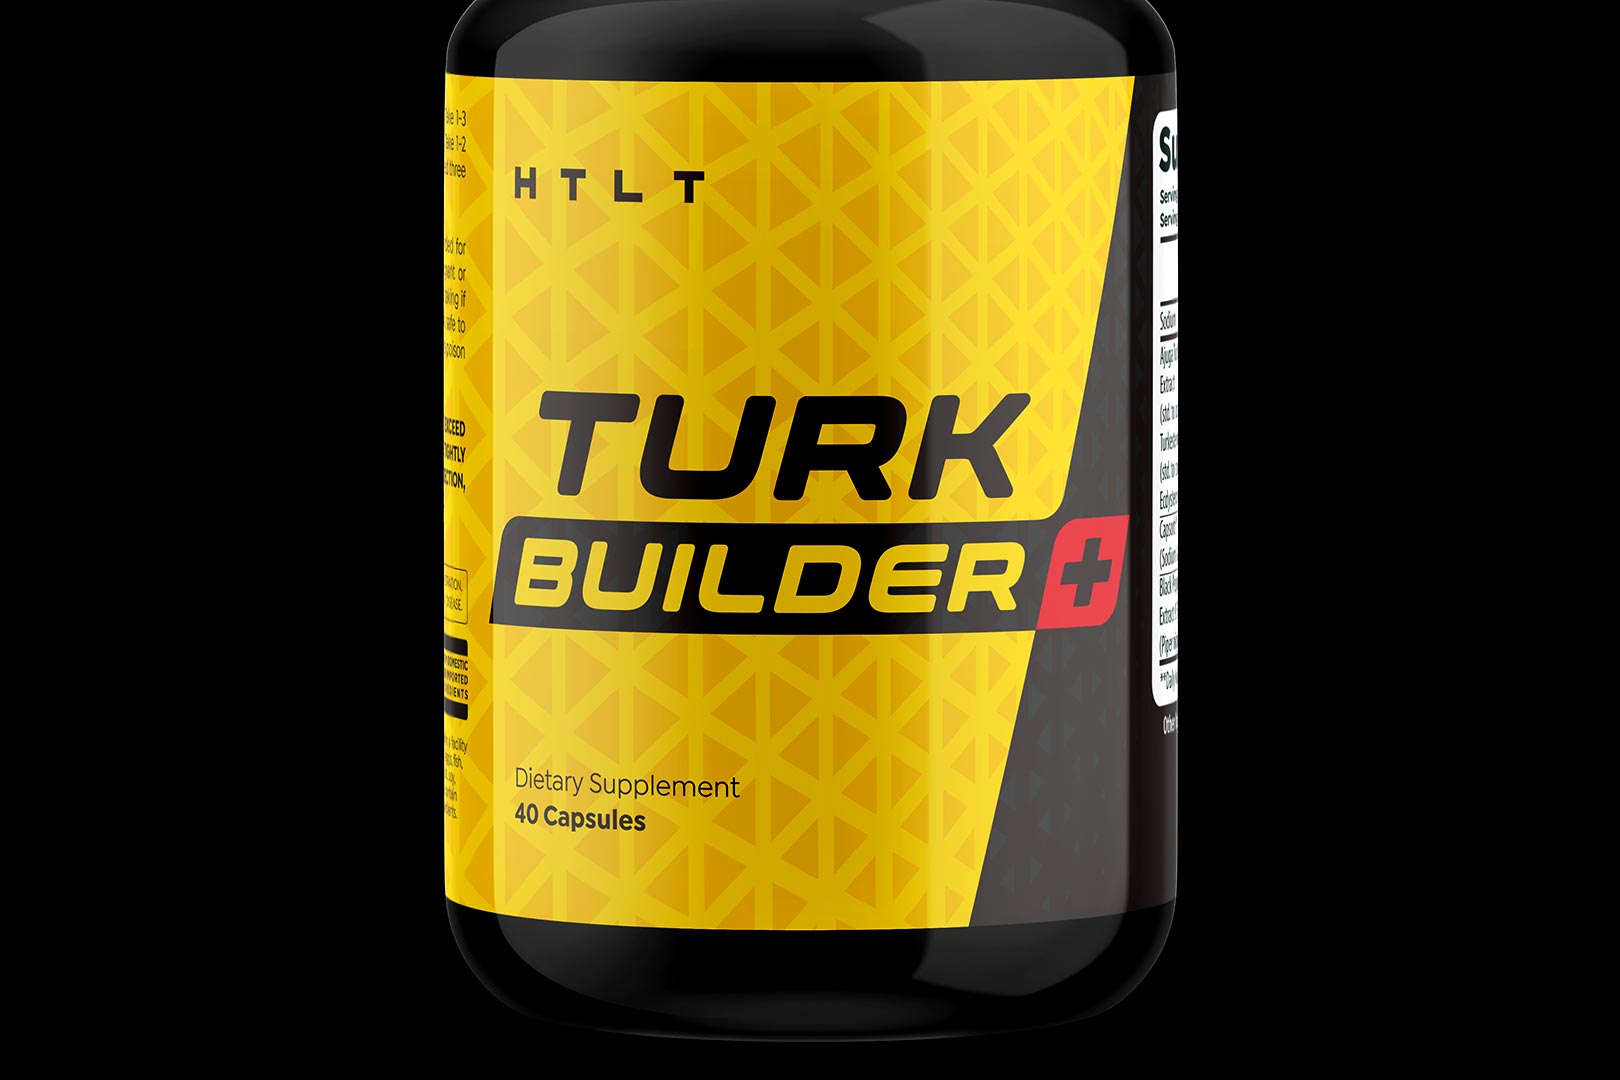 Htlt Restocks Turk Builder